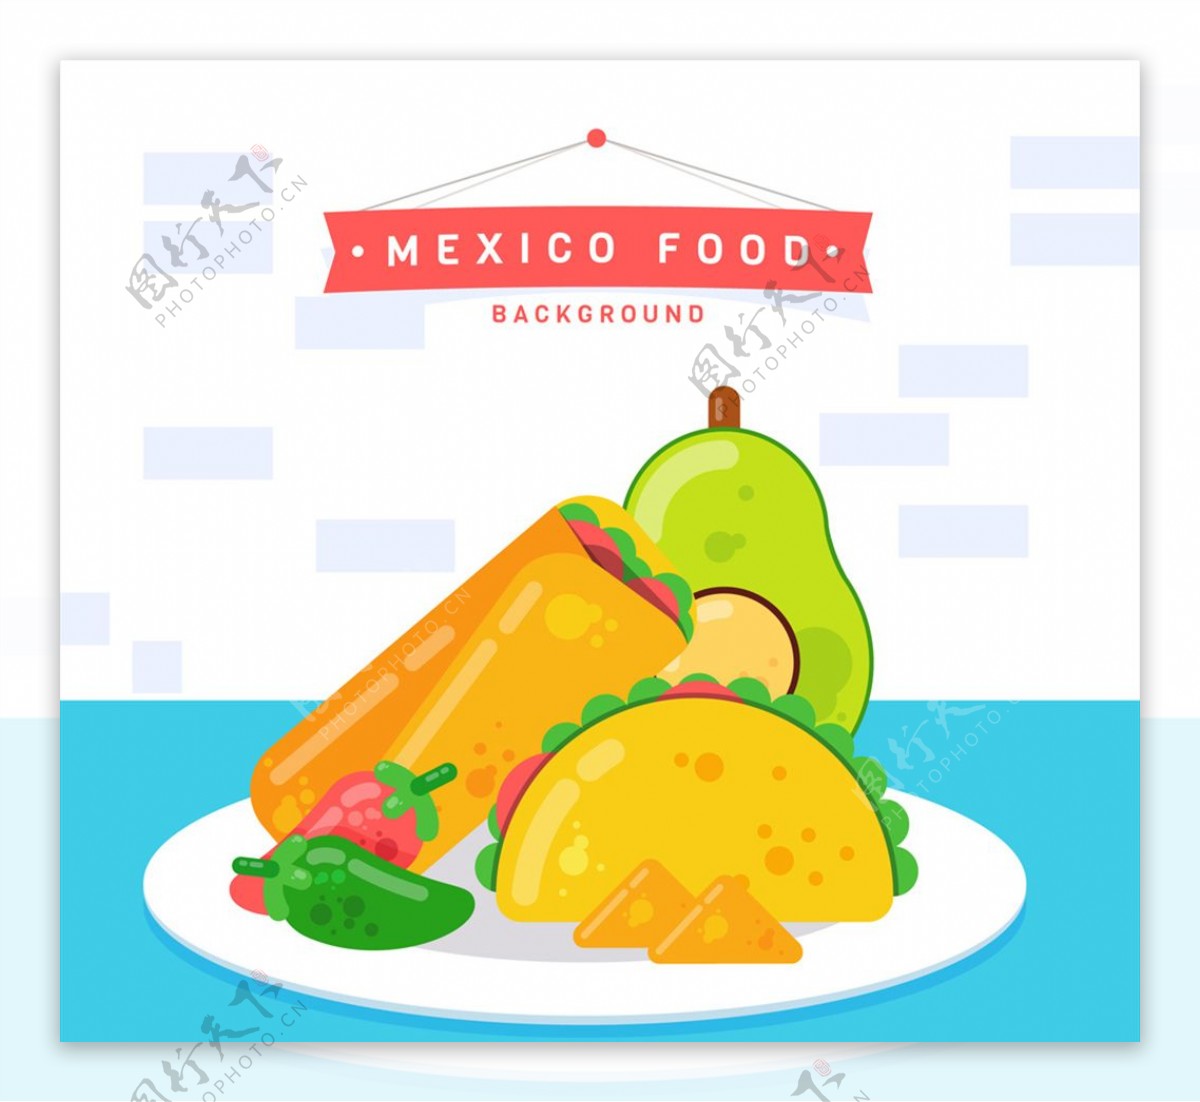 创意餐盘中的墨西哥特色食物